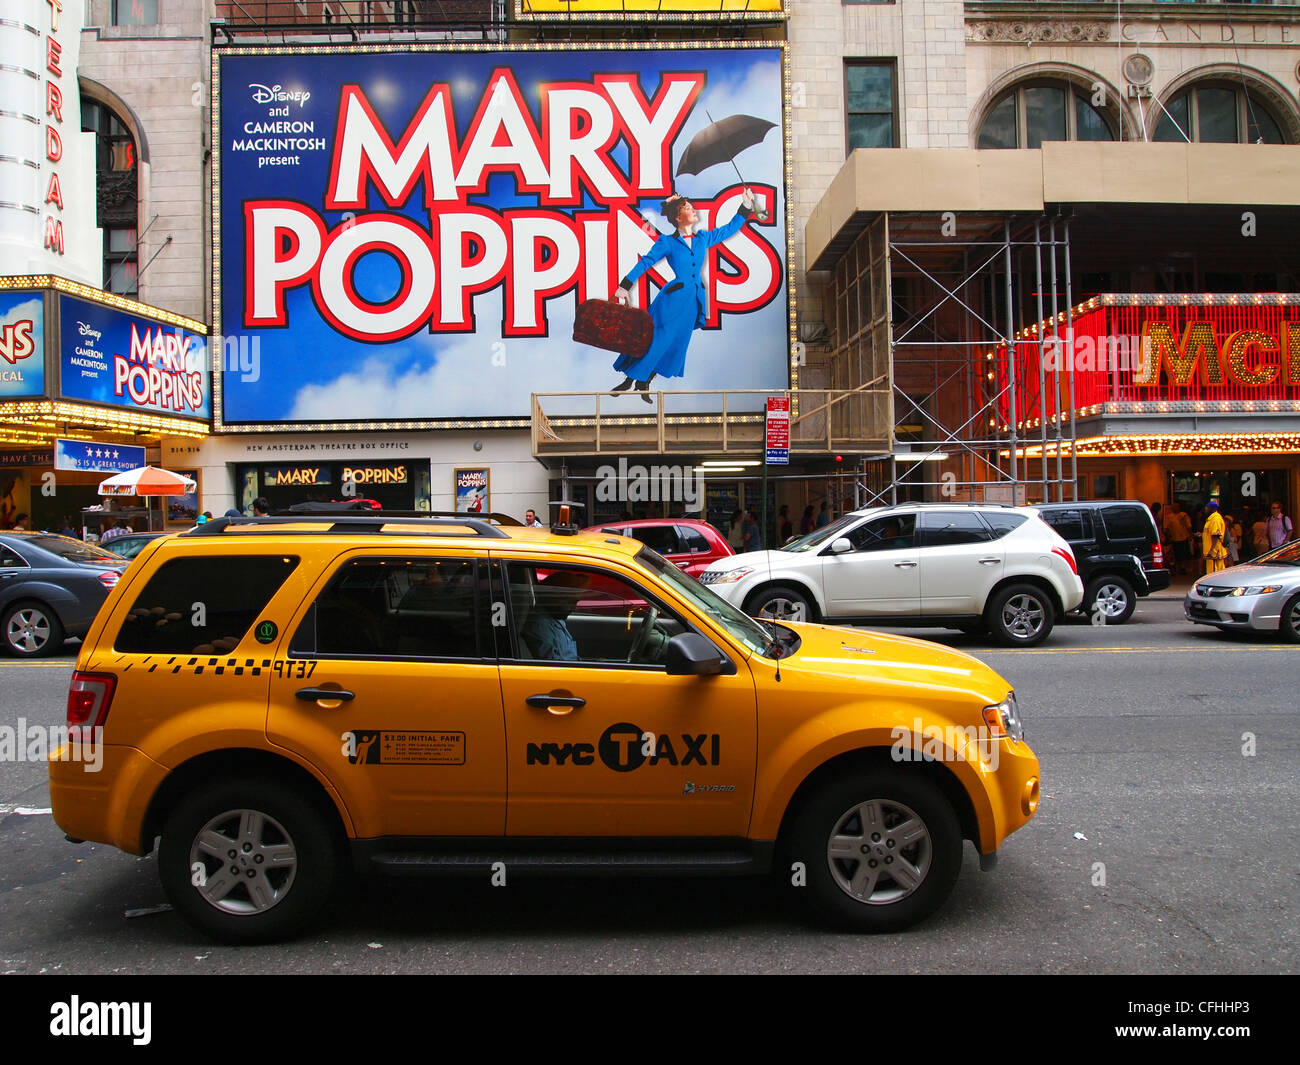 New York gelbes Taxi Taxi vorbei Mary Poppins Zeichen Stockfoto